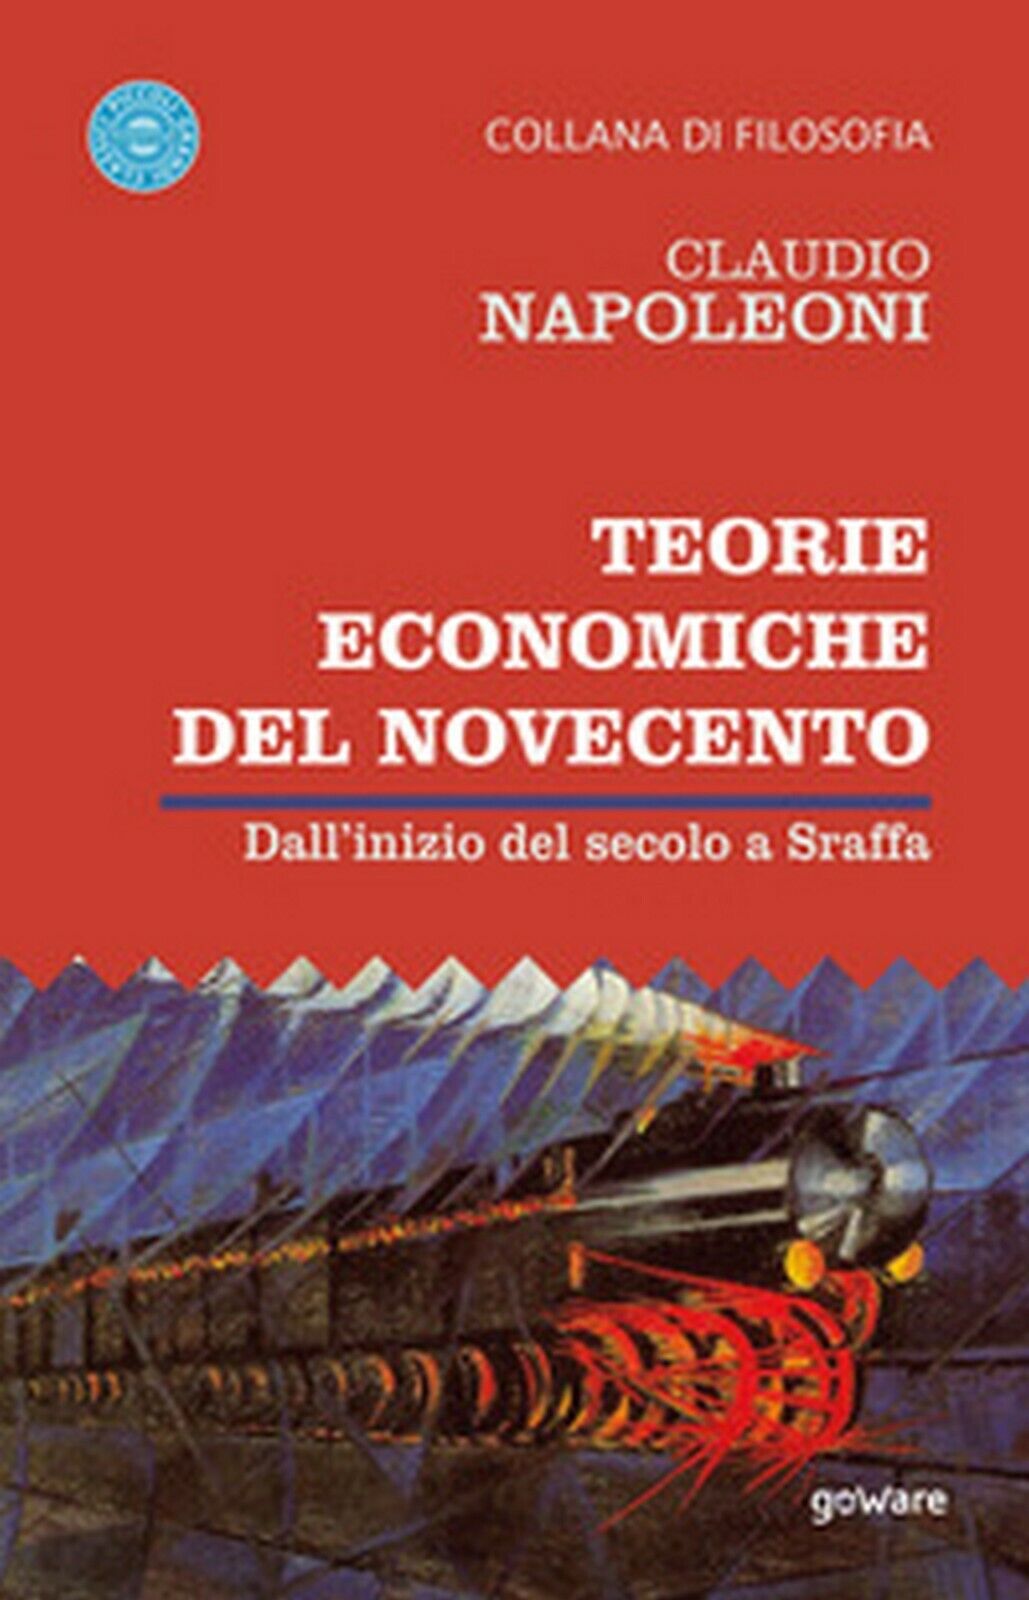 Teorie economiche del Novecento. DalL'inizio del secolo a Sraffa (C. Napoleoni) libro usato